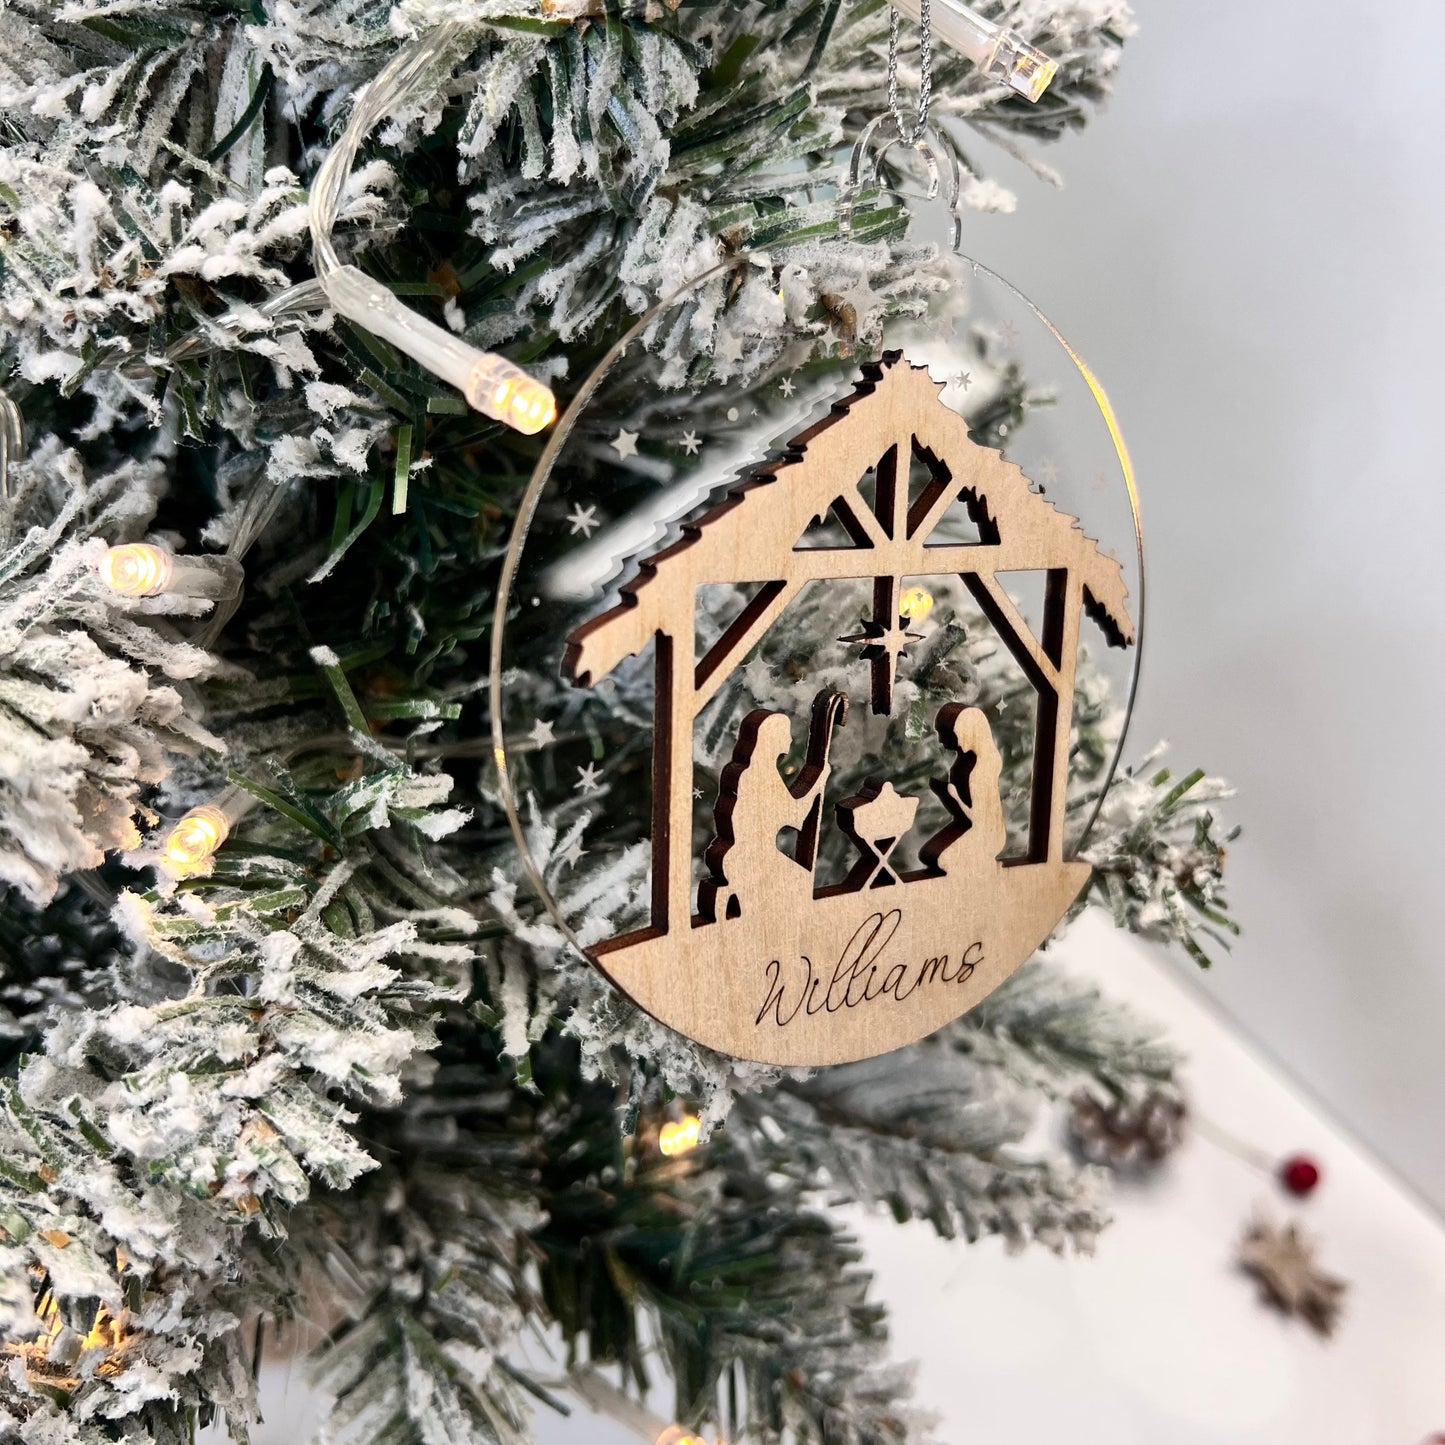 Nativity ornament, personalized ornament